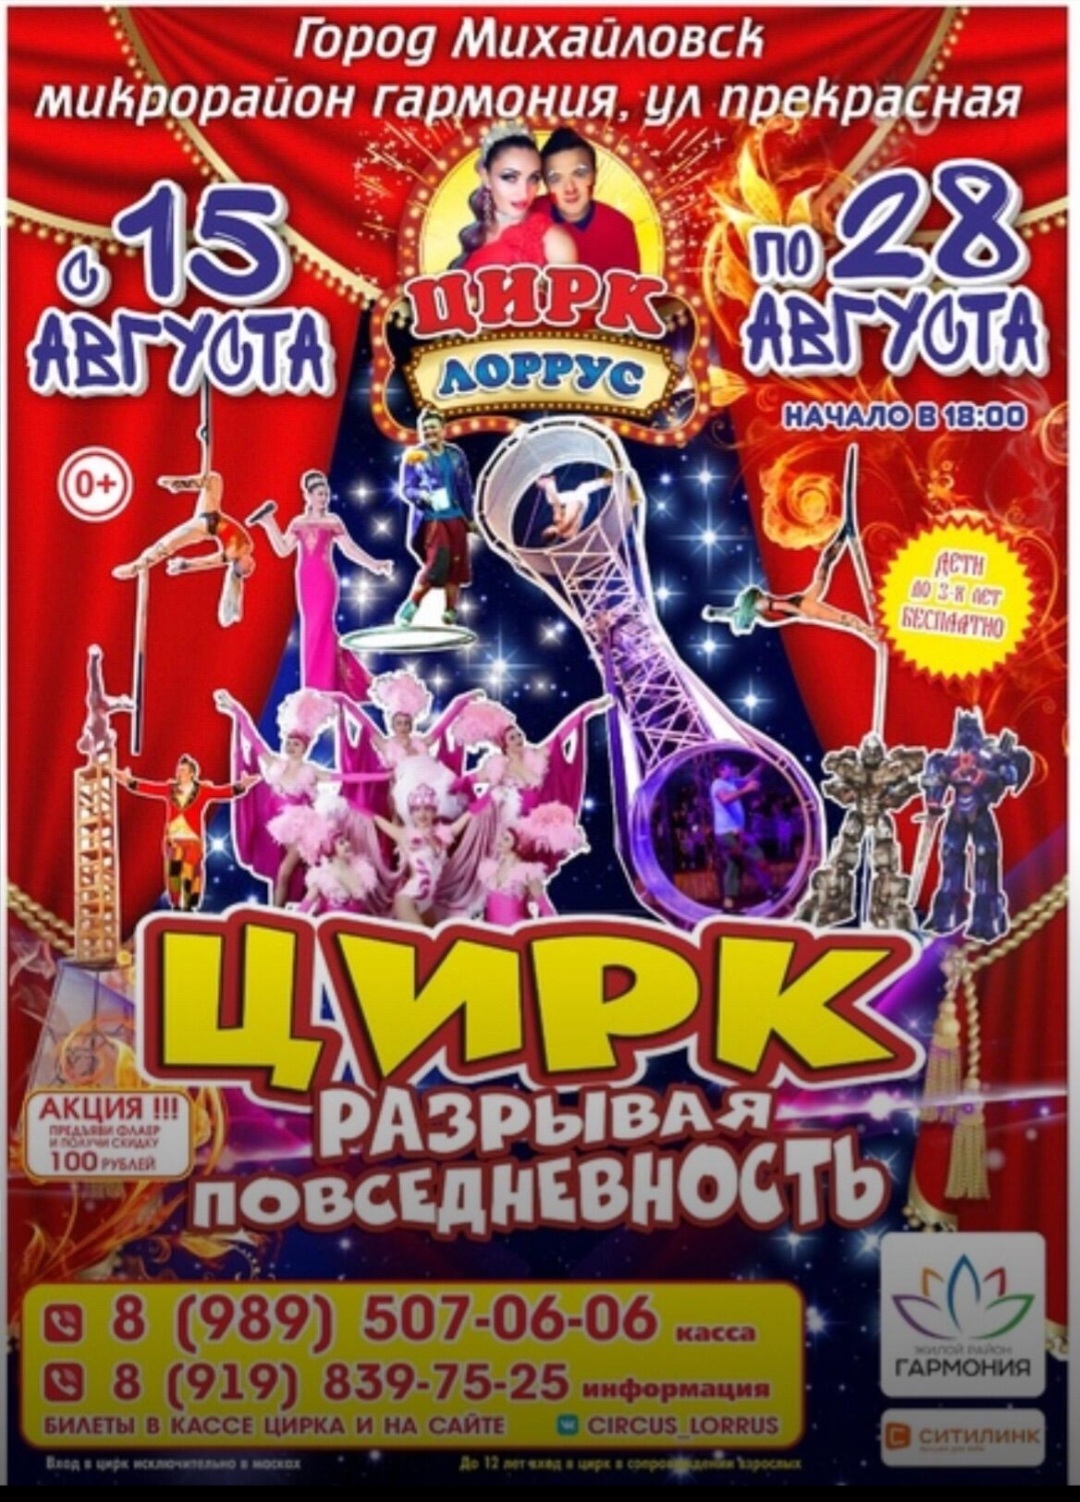 Встречай Михайловск!!! С 15 по 28 августа!!!Цирк "ЛорРус" - Разрывая повседневность! #ЛорРус От Создателей Шоу Каскадёров!!!